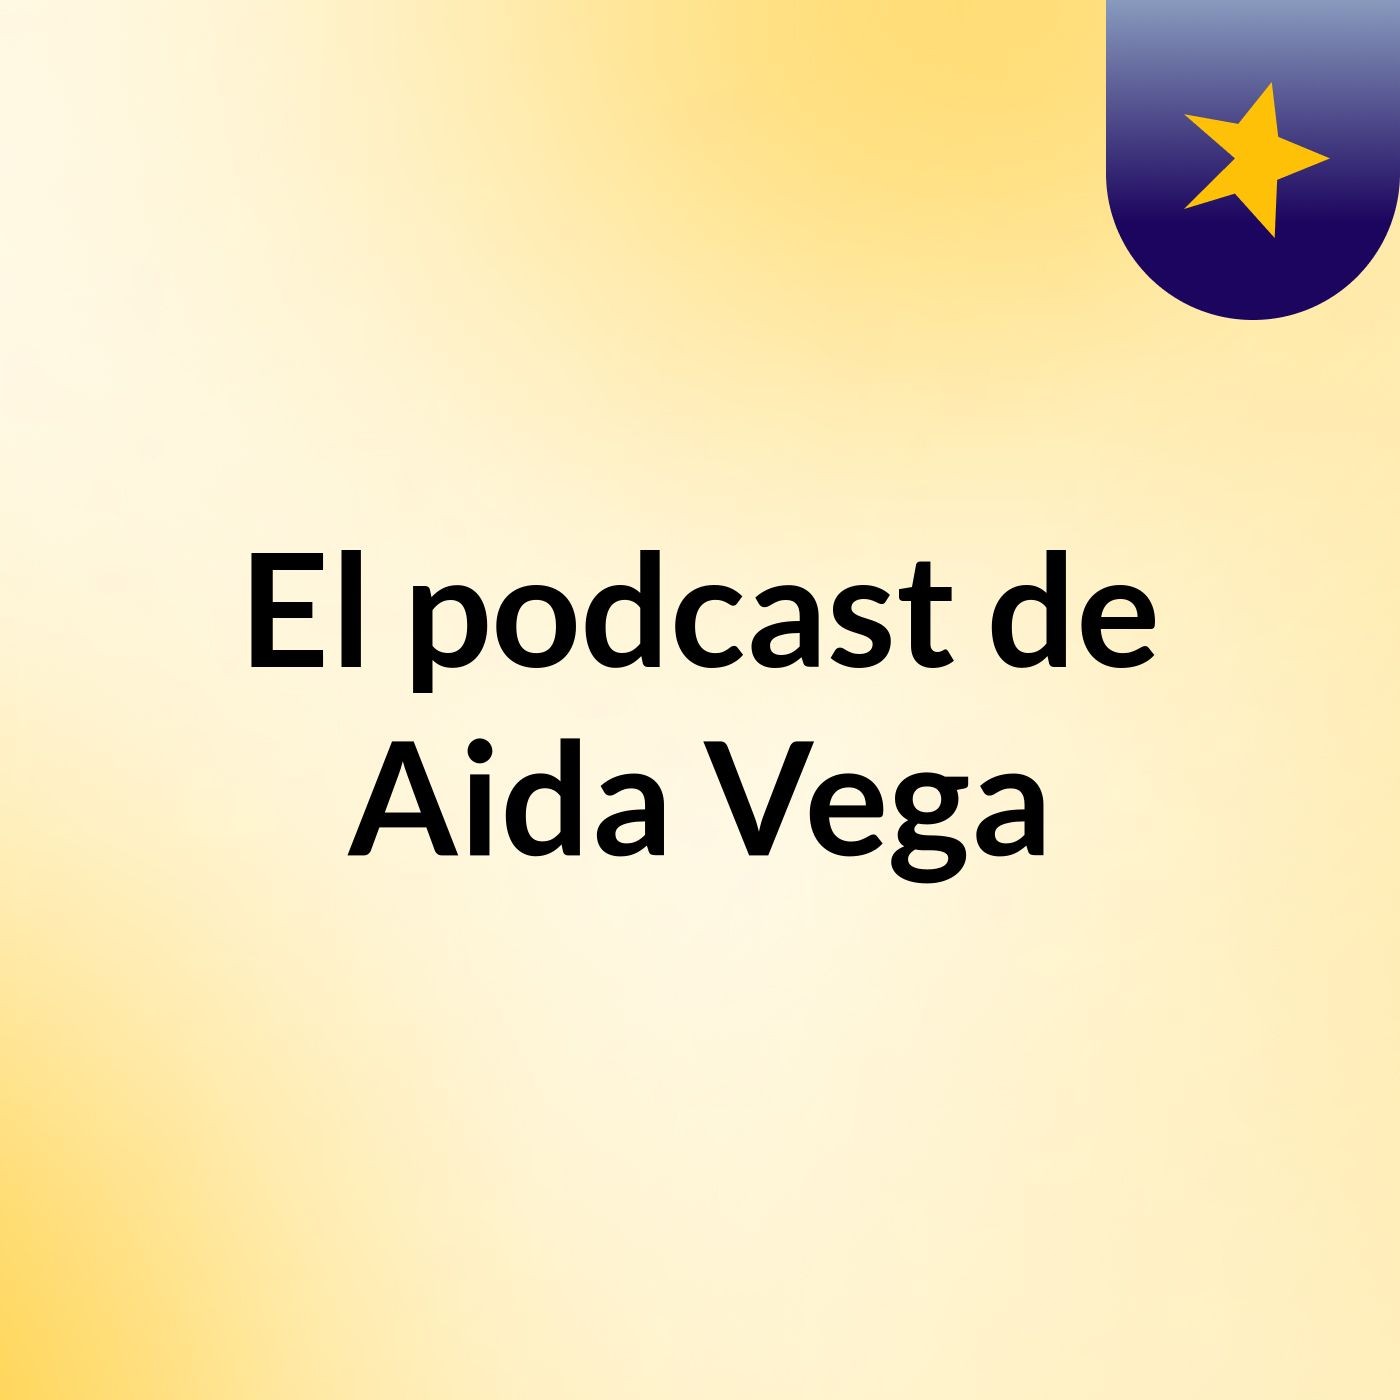 El podcast de Aida Vega